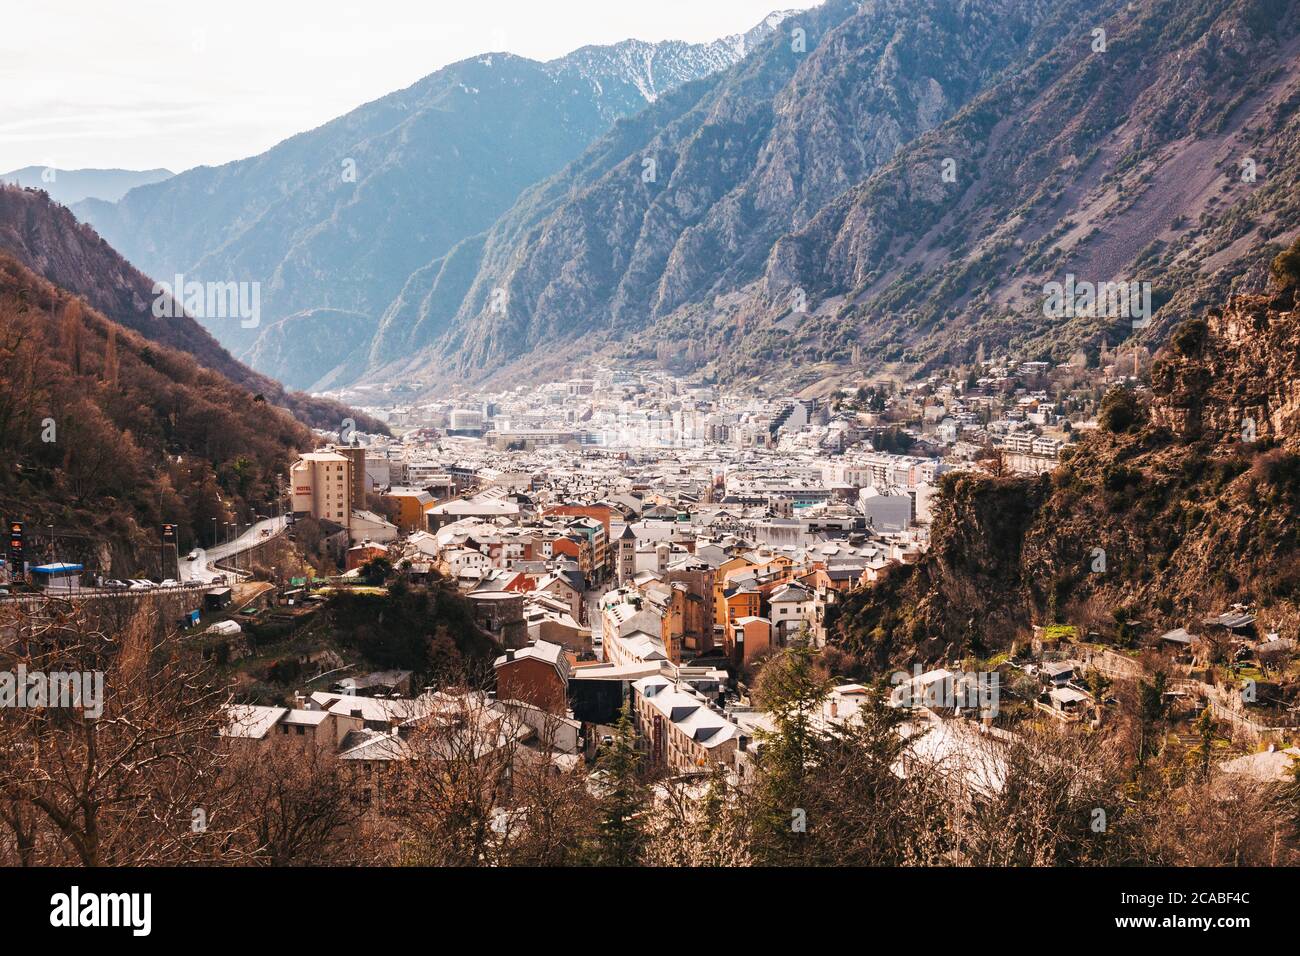 La città di Andorra la Vella, capitale di Andorra, situata nella valle della Gran Valira, nella parte meridionale dei Pirenei. Ospita solo 23,000 residenti Foto Stock